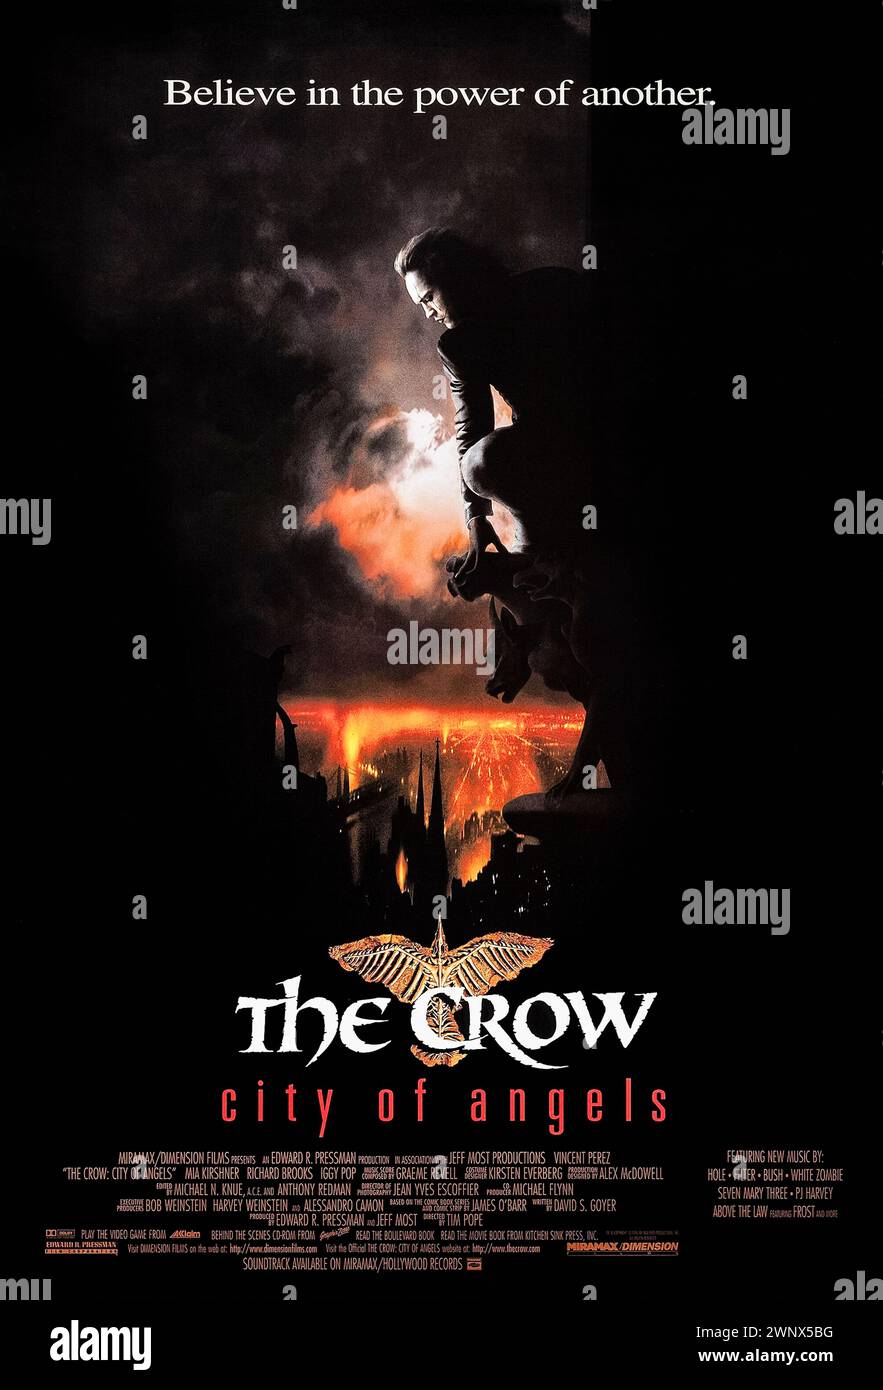 The Crow: City of Angels (1996) diretto da Tim Pope e interpretato da Vincent Perez, mia Kirshner e Richard Brooks. Lo spirito del Corvo resuscita un altro uomo in cerca di vendetta per l'omicidio di suo figlio. Fotografia di un poster originale da 1996 US a un foglio. ***SOLO PER USO EDITORIALE*** credito: BFA / Miramax Films Foto Stock